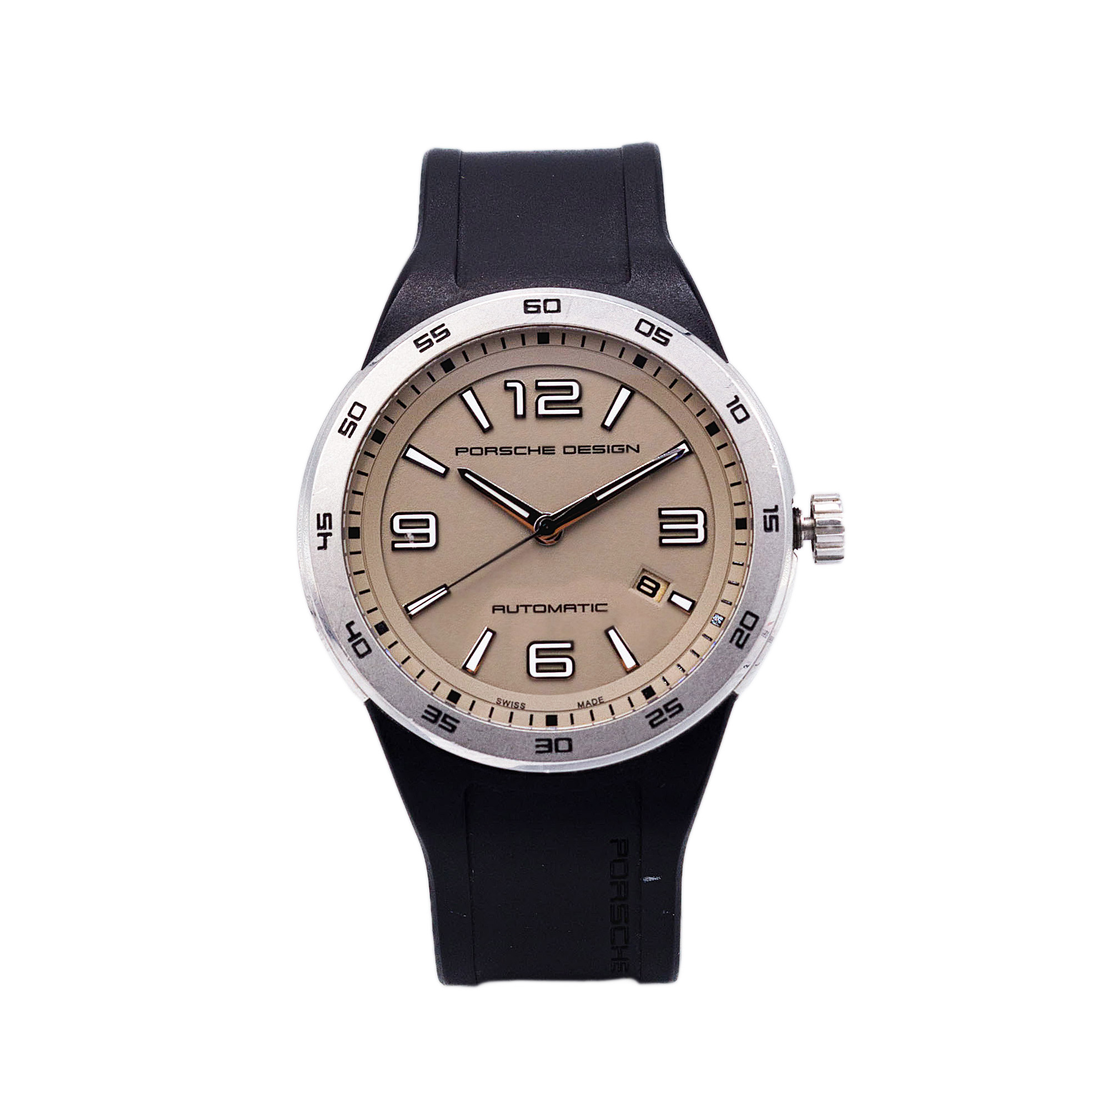 Reloj Porsche Design Flat Six para Caballero 